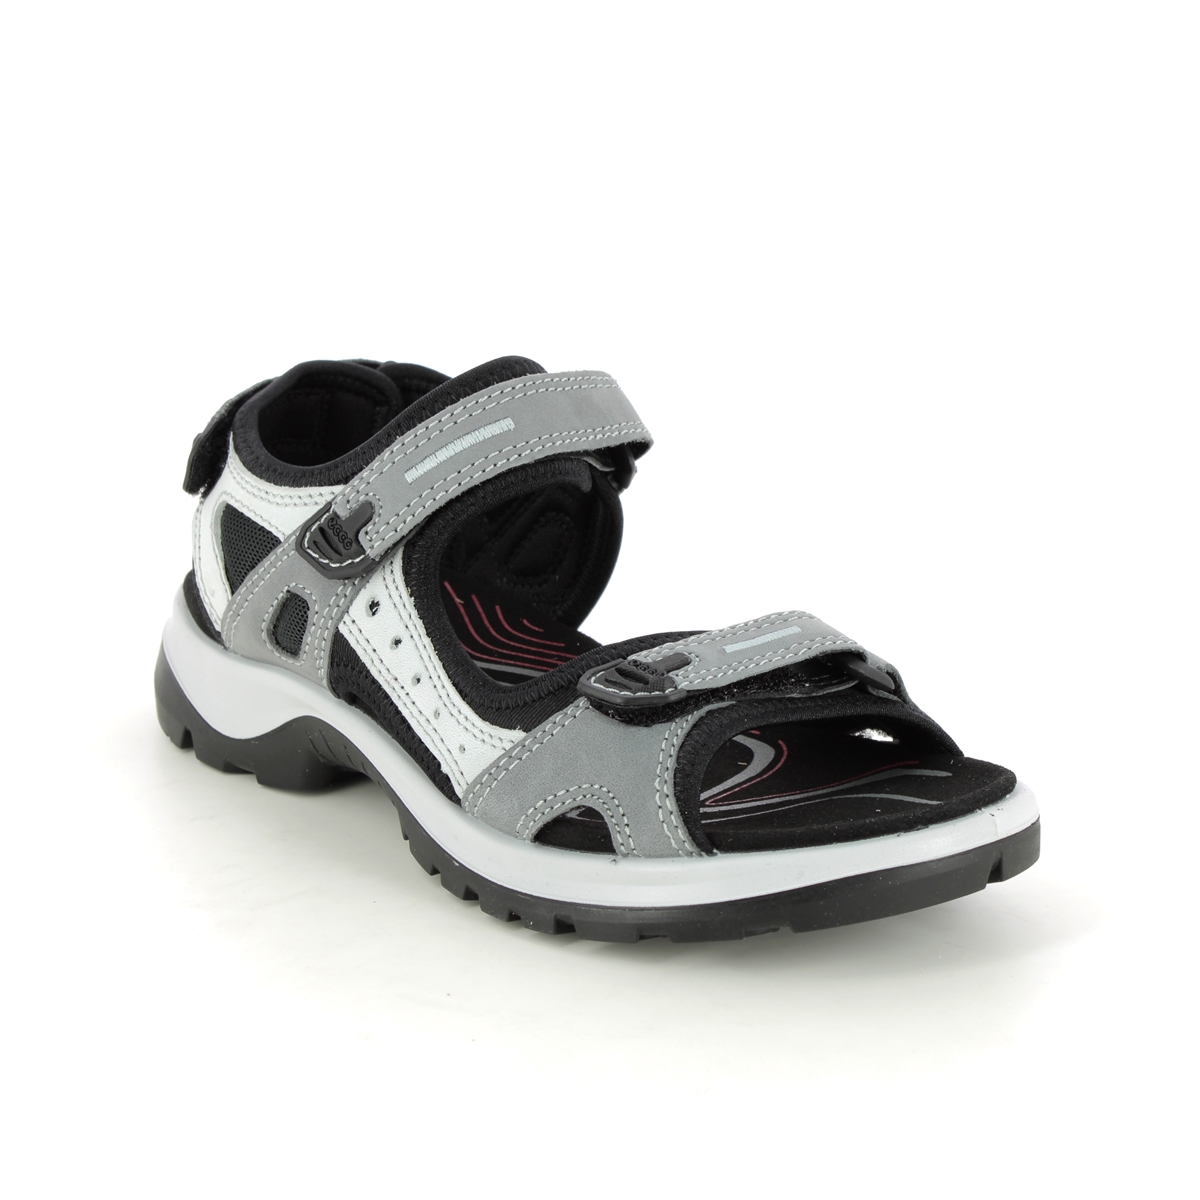 Ecco Offroad Lady Grey Nubuck Womens Walking Sandals 069563-02244 In Size 41 In Plain Grey Nubuck